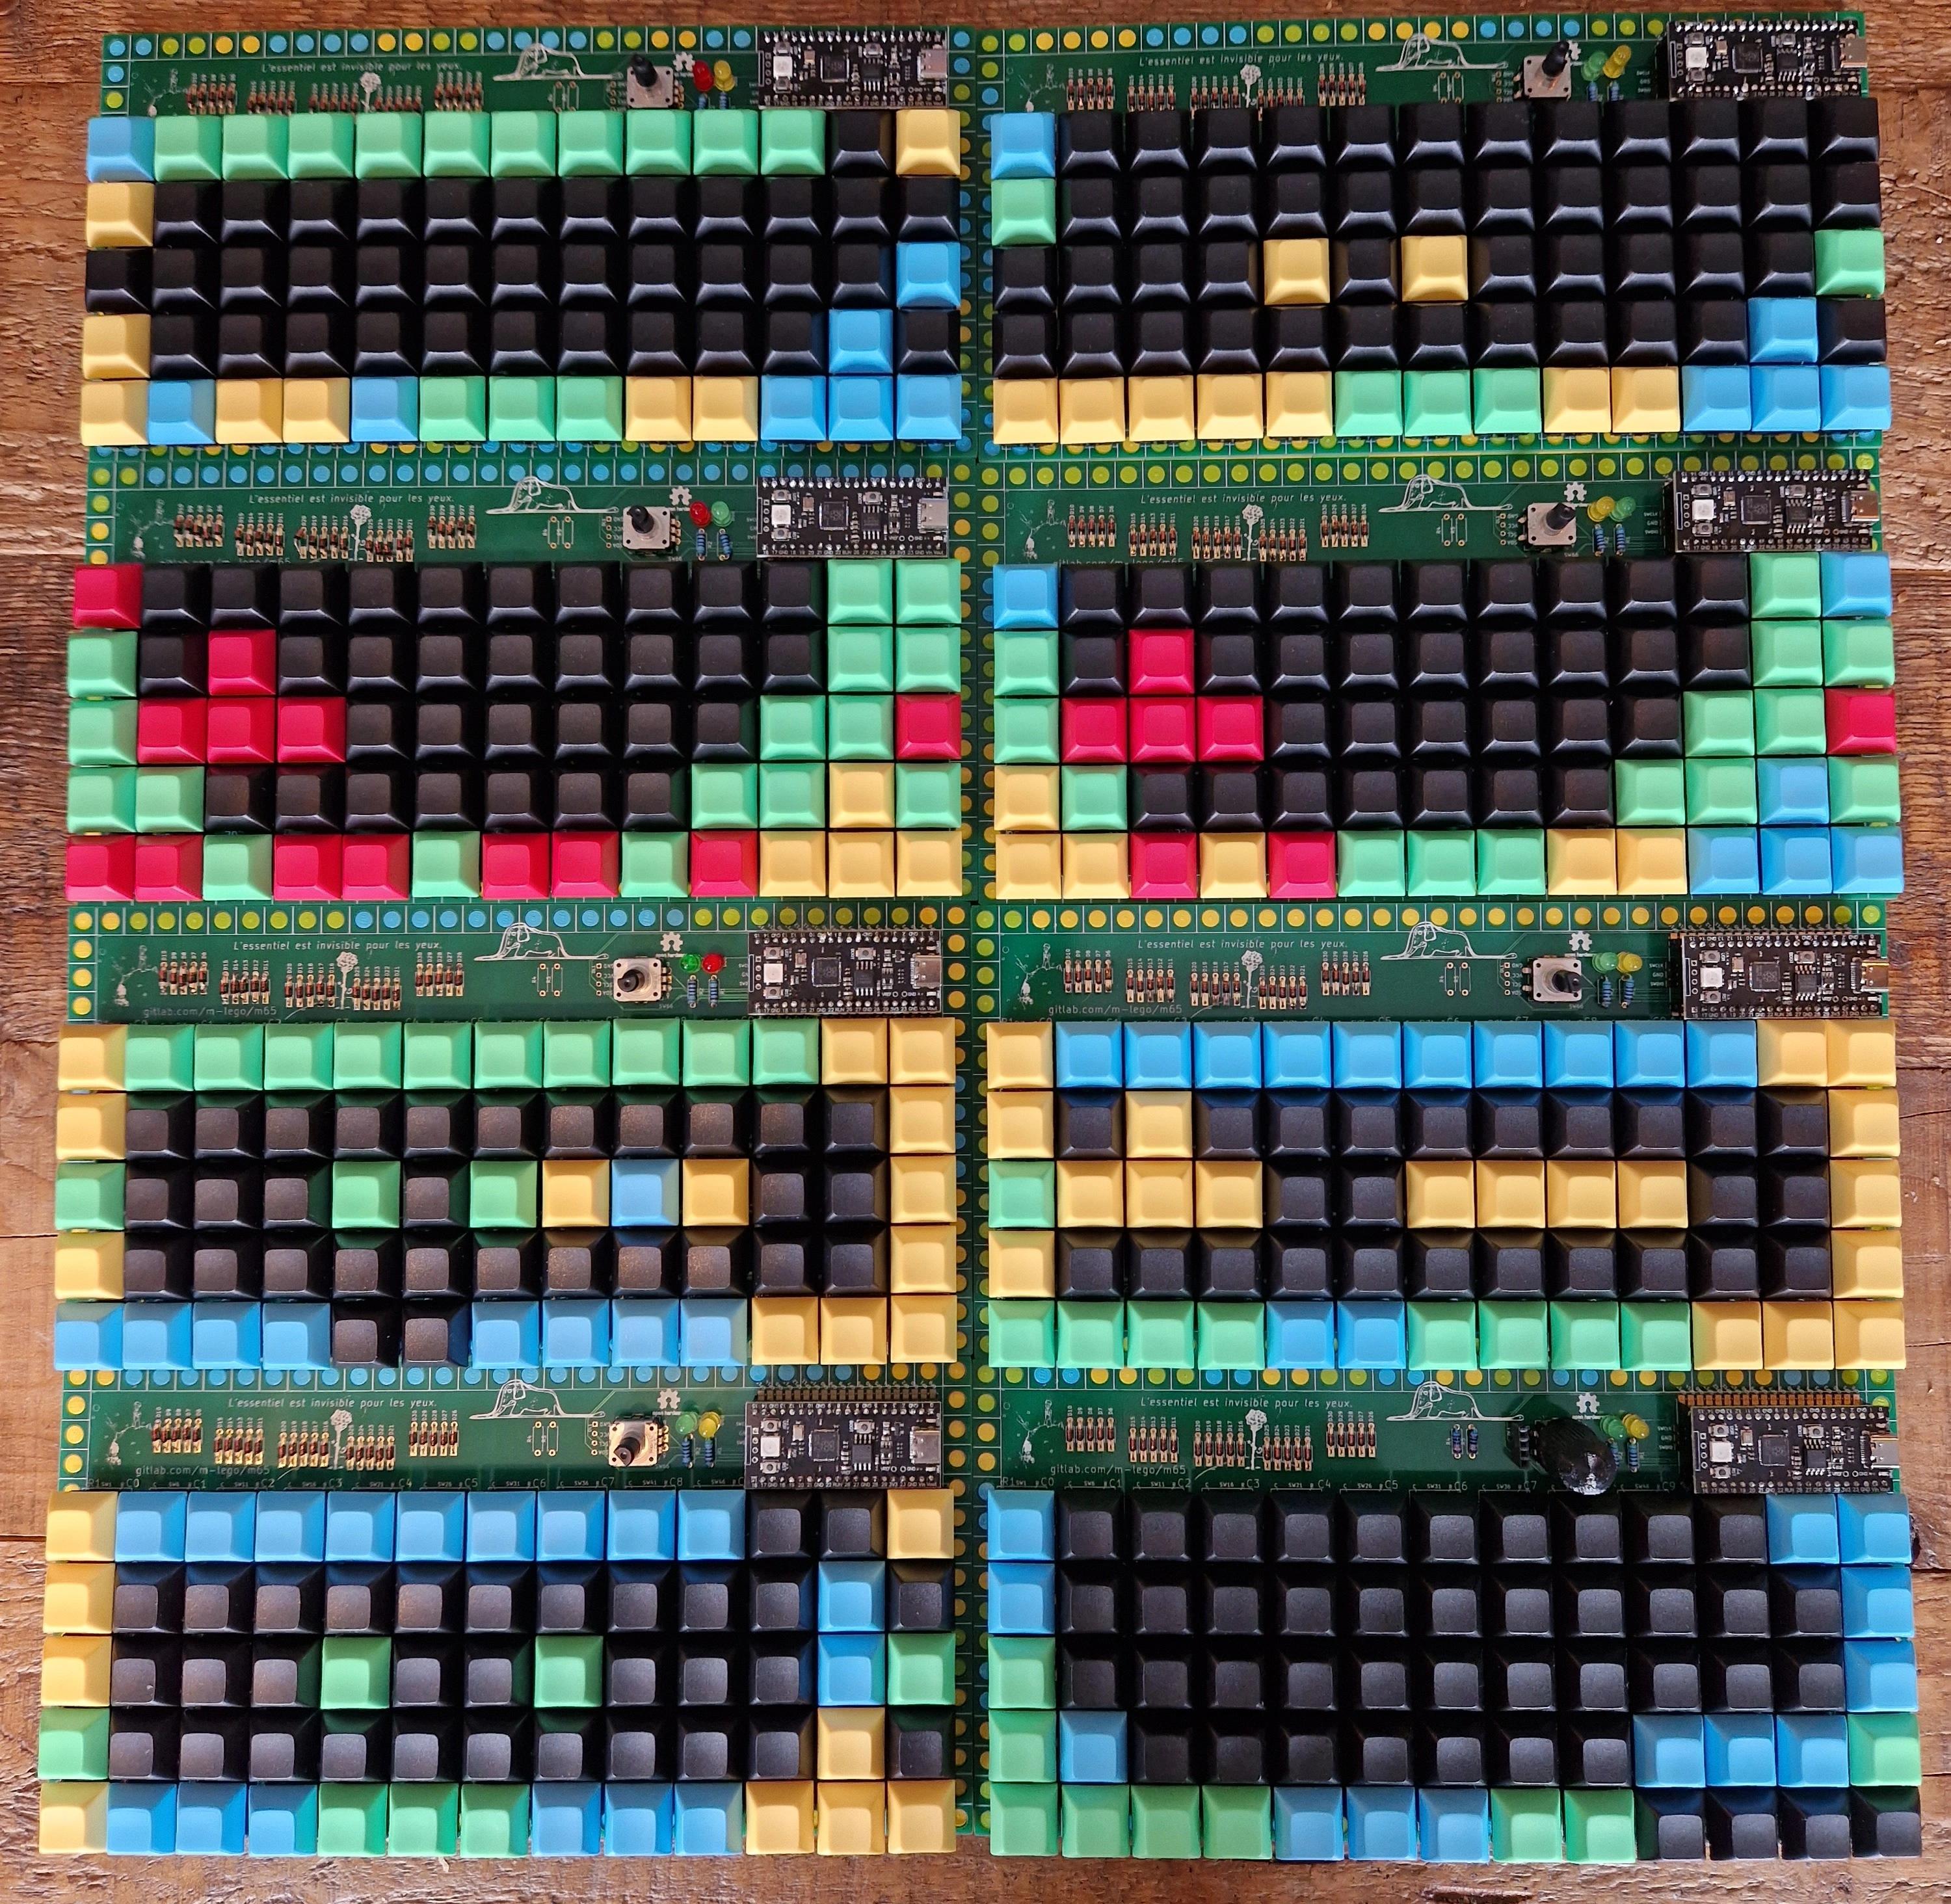 Acht der 15 selbstgebauten Tastaturen